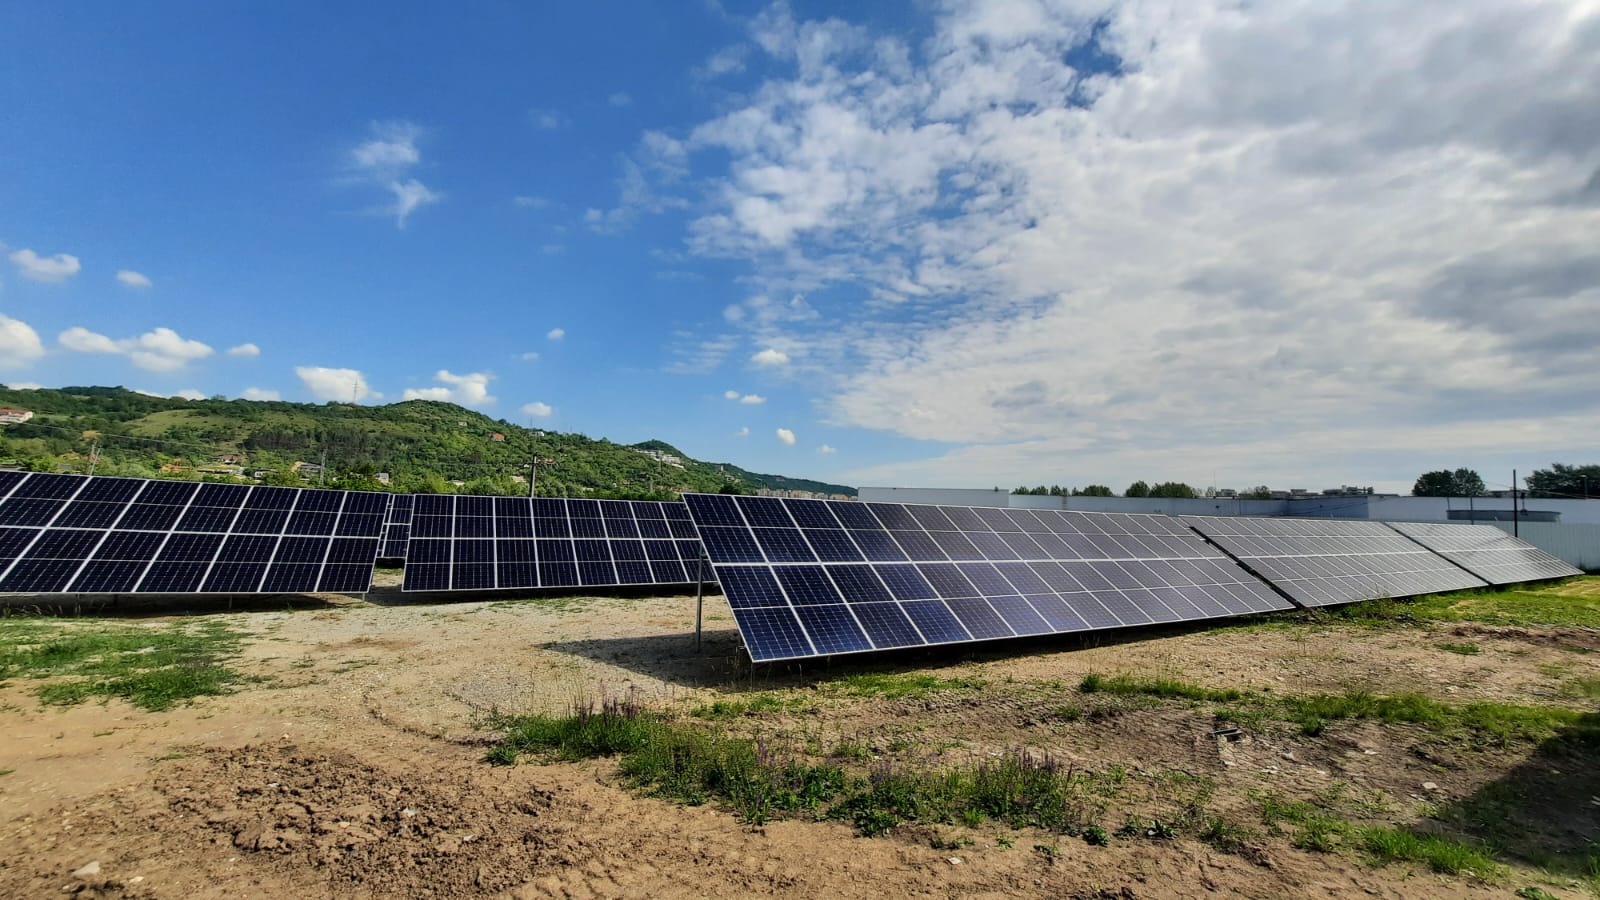 Şase centrale fotovoltaice, instalate în localităţi din judeţul Cluj. Investiţie de peste 23 de milioane de lei. | Foto: Consiliul Judeţean Cluj